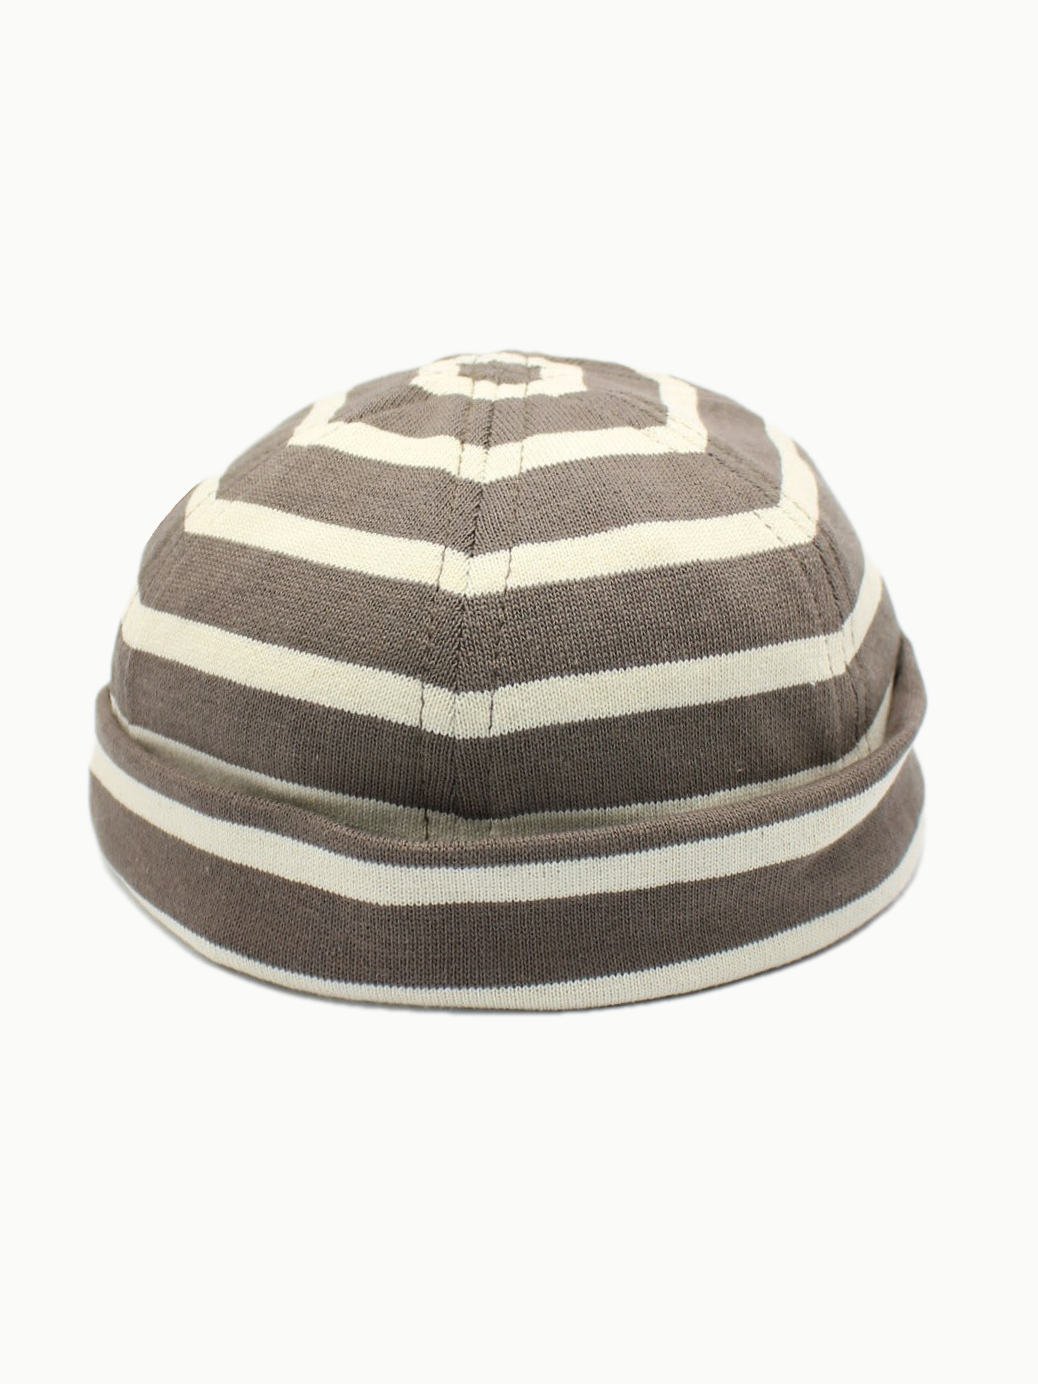 MATILDA | Striped Docker Hat | Tan